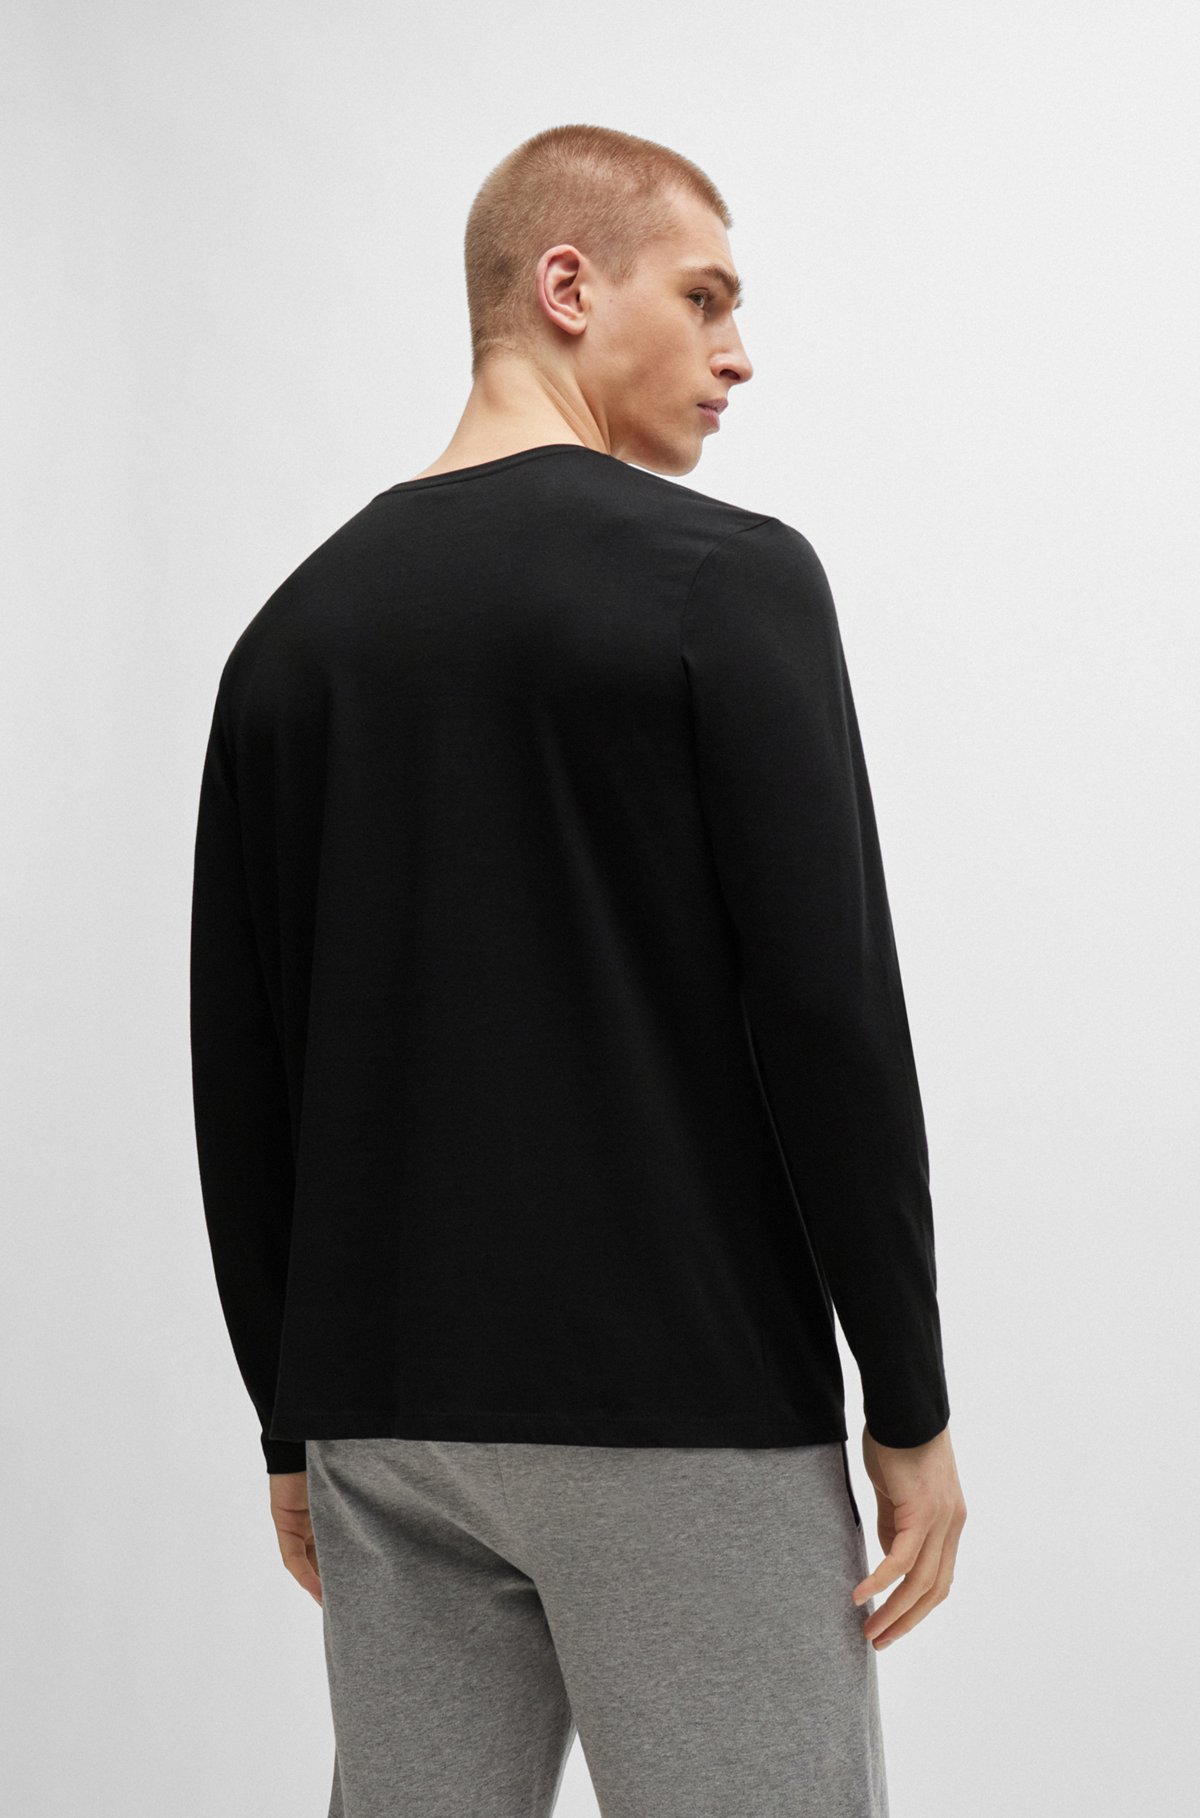 Camiseta regular fit en algodón elástico con logo bordado, Negro